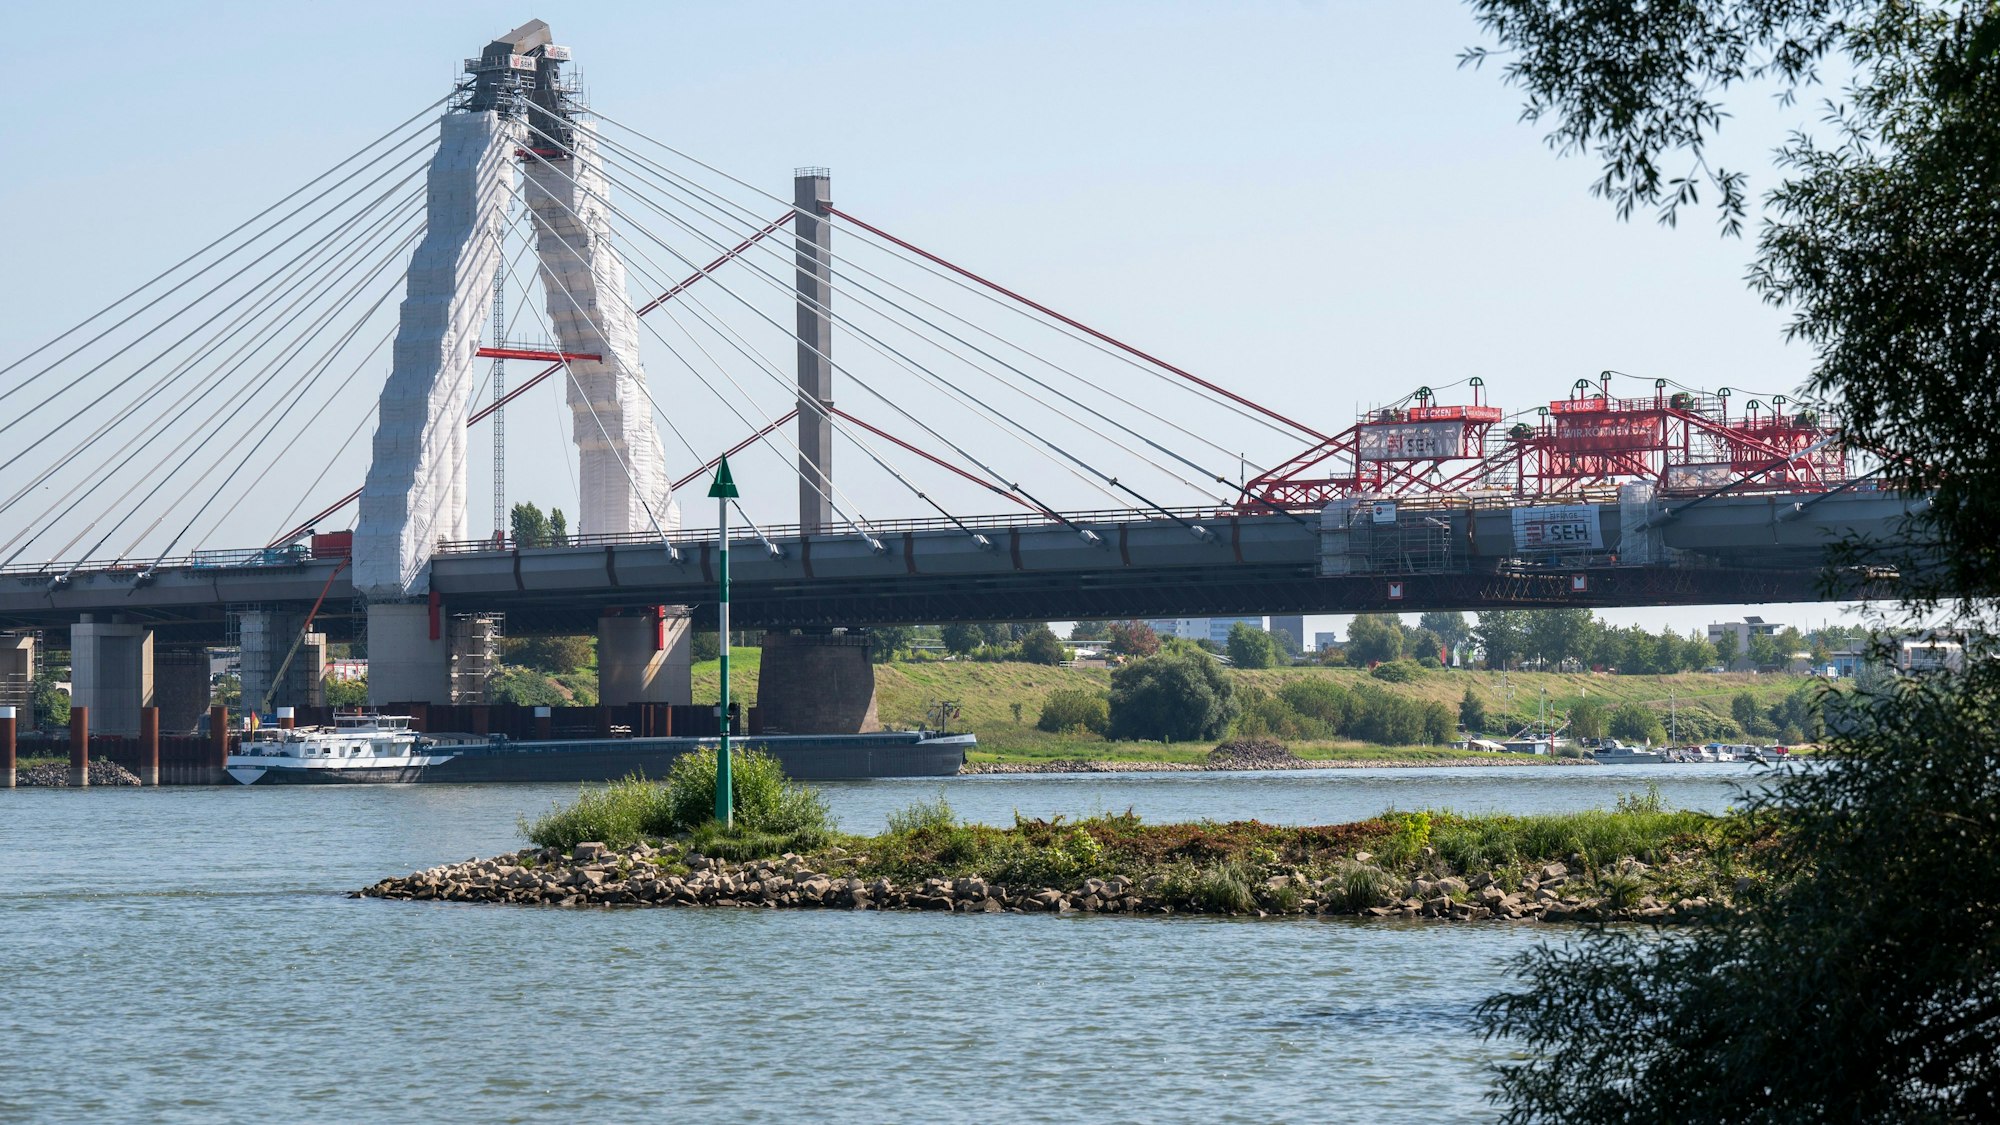 Die neue Leverkusener Brücke ist fast fertig. Das letzte Stahlbauteil ist eingebaut. Das Bauwerk soll voraussichtlich Anfang 2024 freigegeben werden. Blick auf die Brückenbaustelle vom Rheinufer aus.